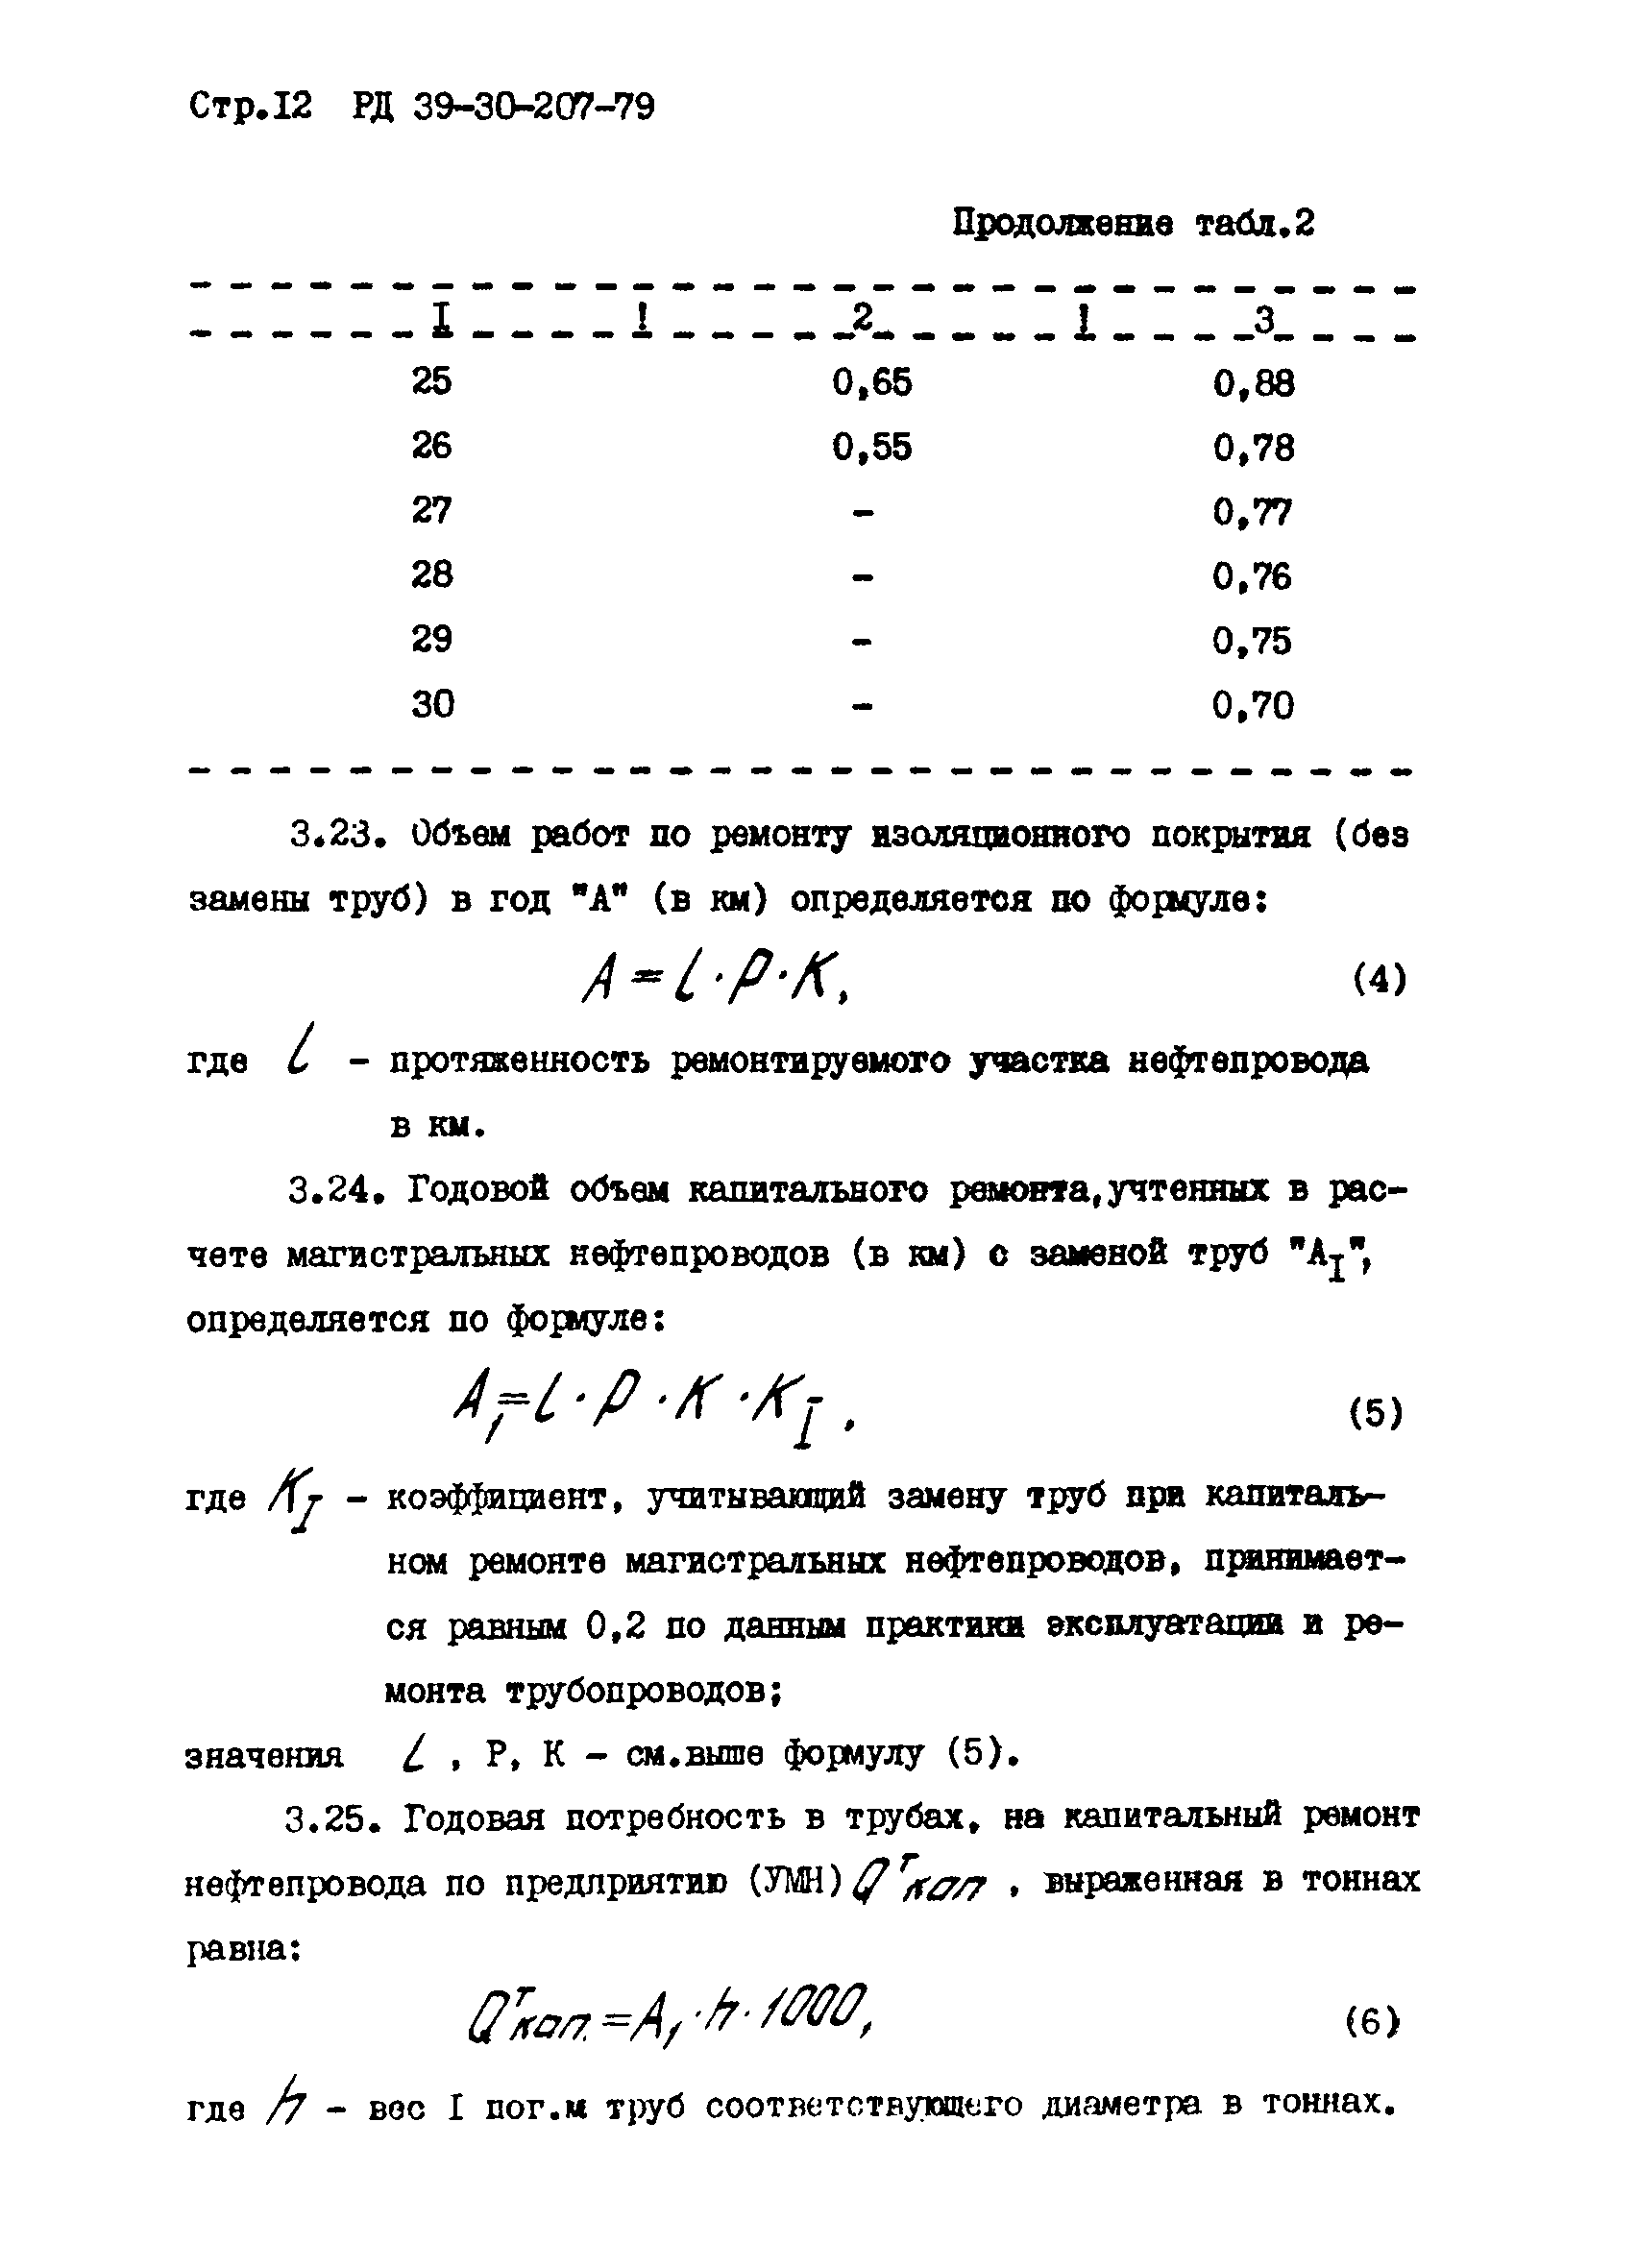 РД 39-30-207-79